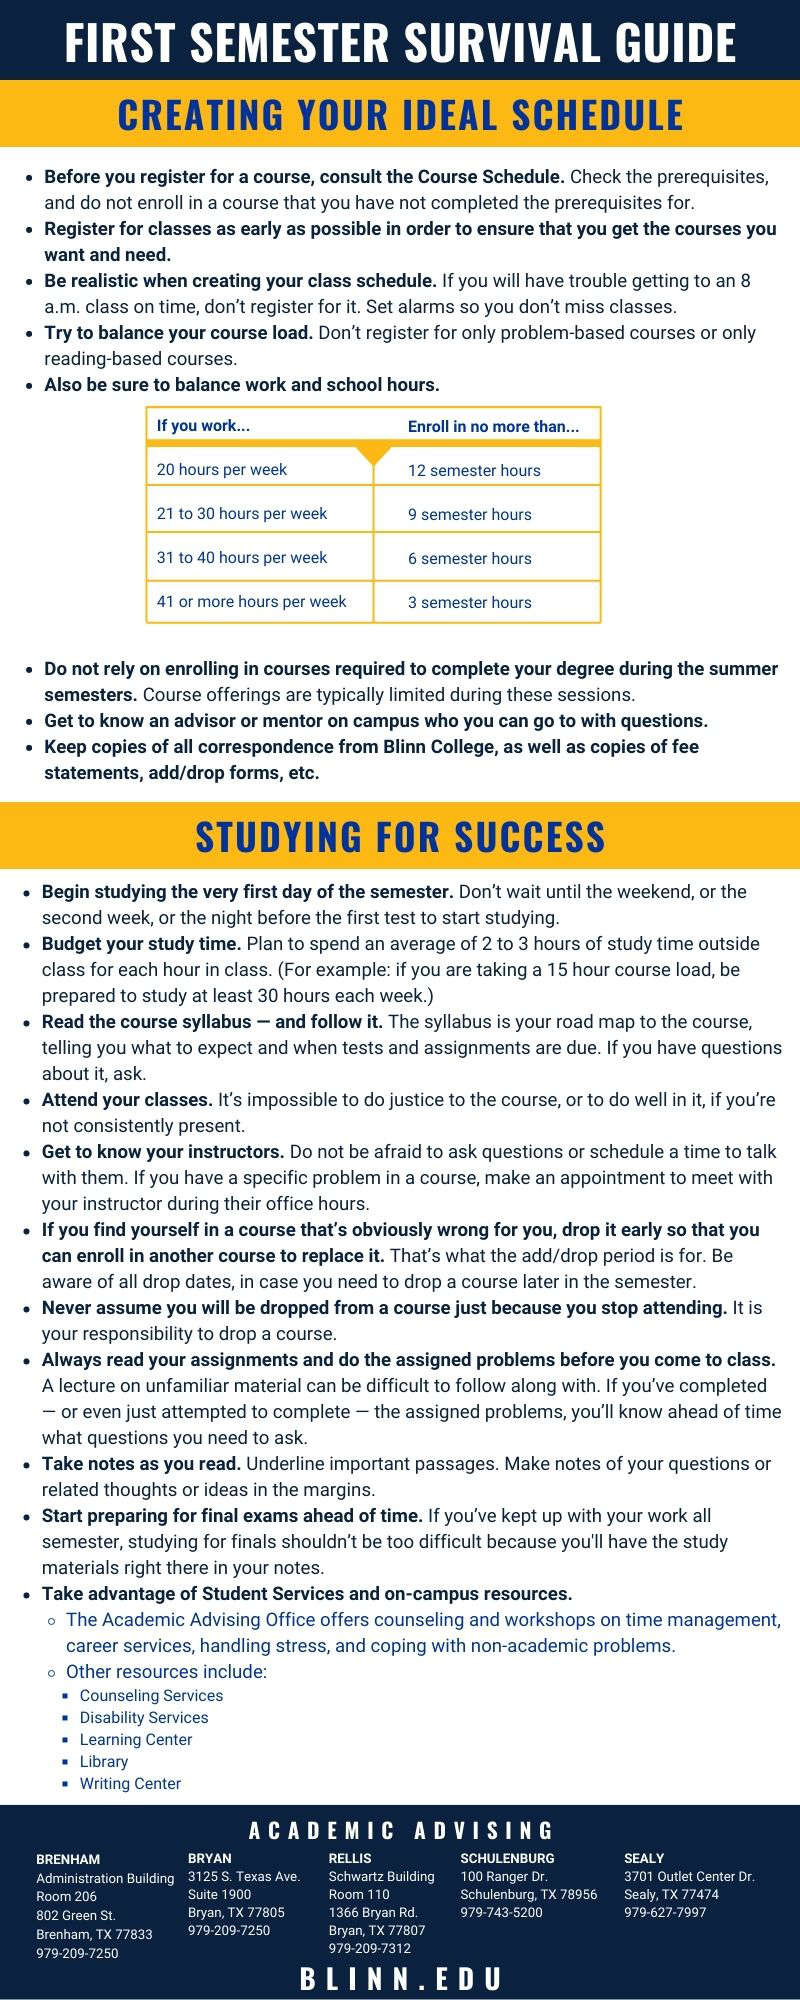 blinn-college-academic-advising---first-semester-survival-guide---infographic.jpg